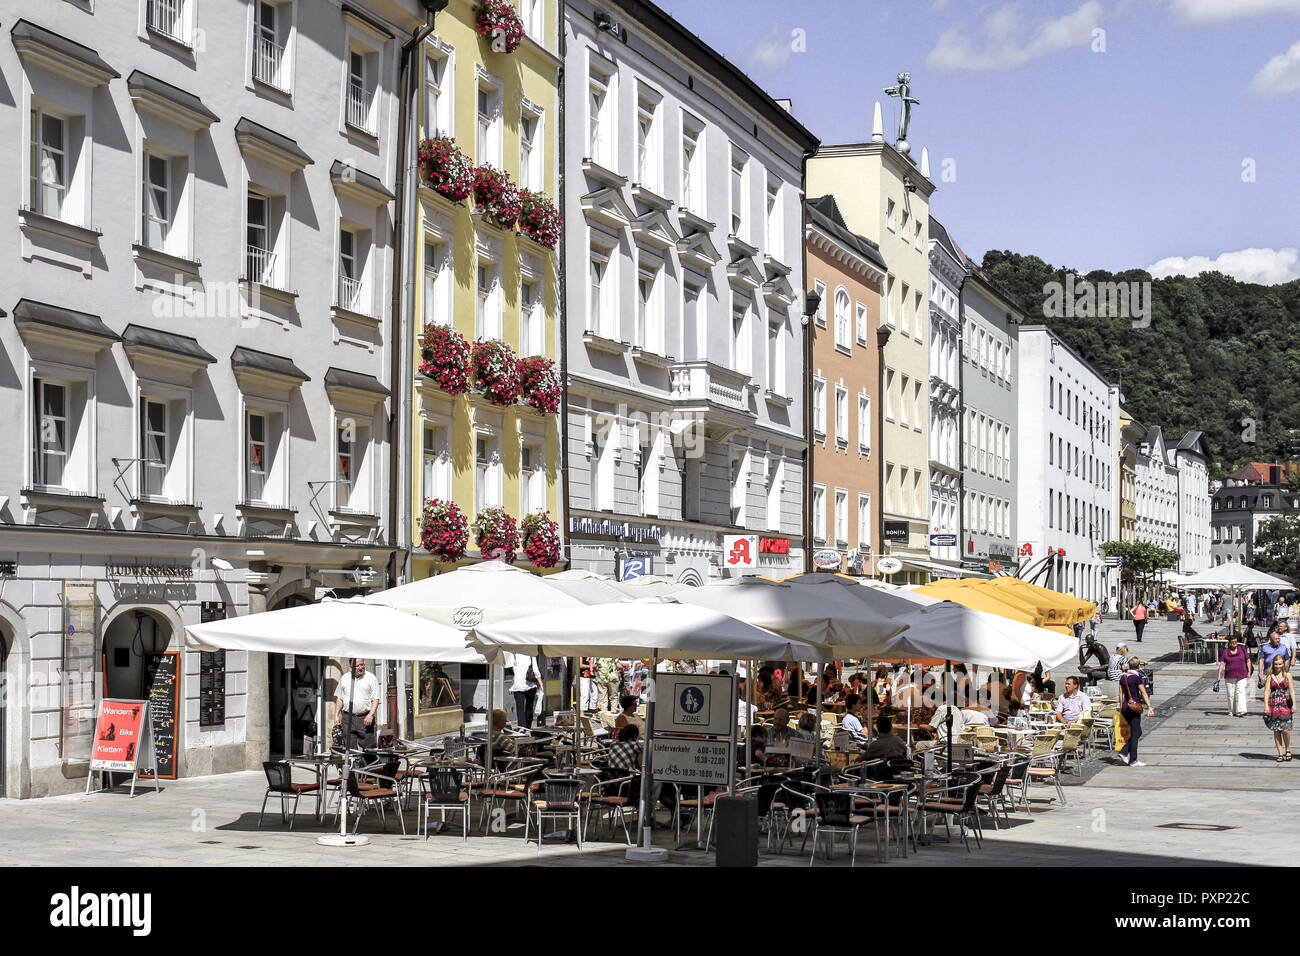 Deutschland, Bayern, Niederbayern, Passau, Strassencafes in der Ludwigstrasse Foto Stock